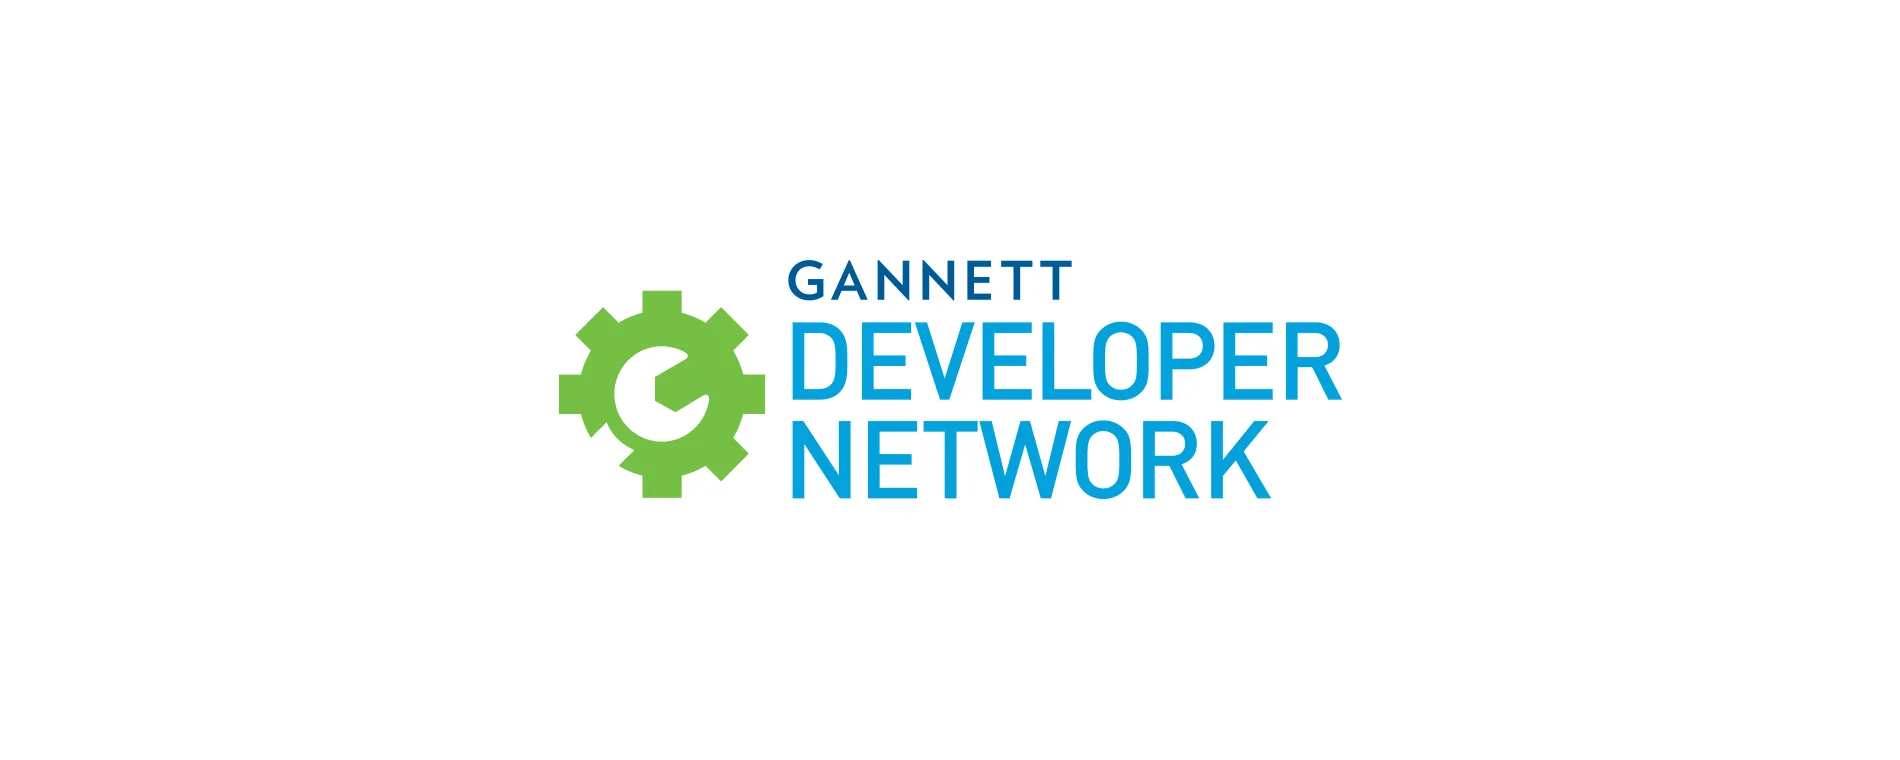 Gannett Developer Network logo design